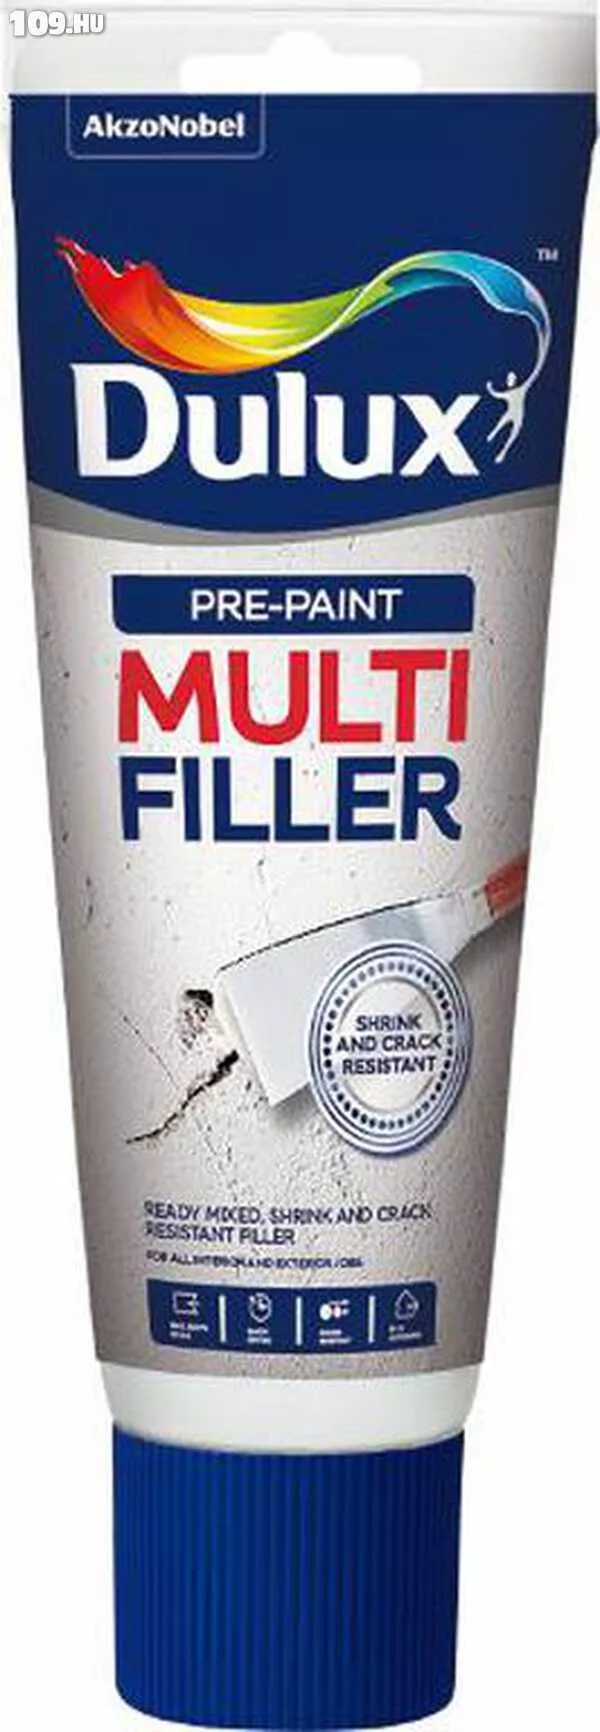 Dulux Pre-Paint Multi Filler 330 G